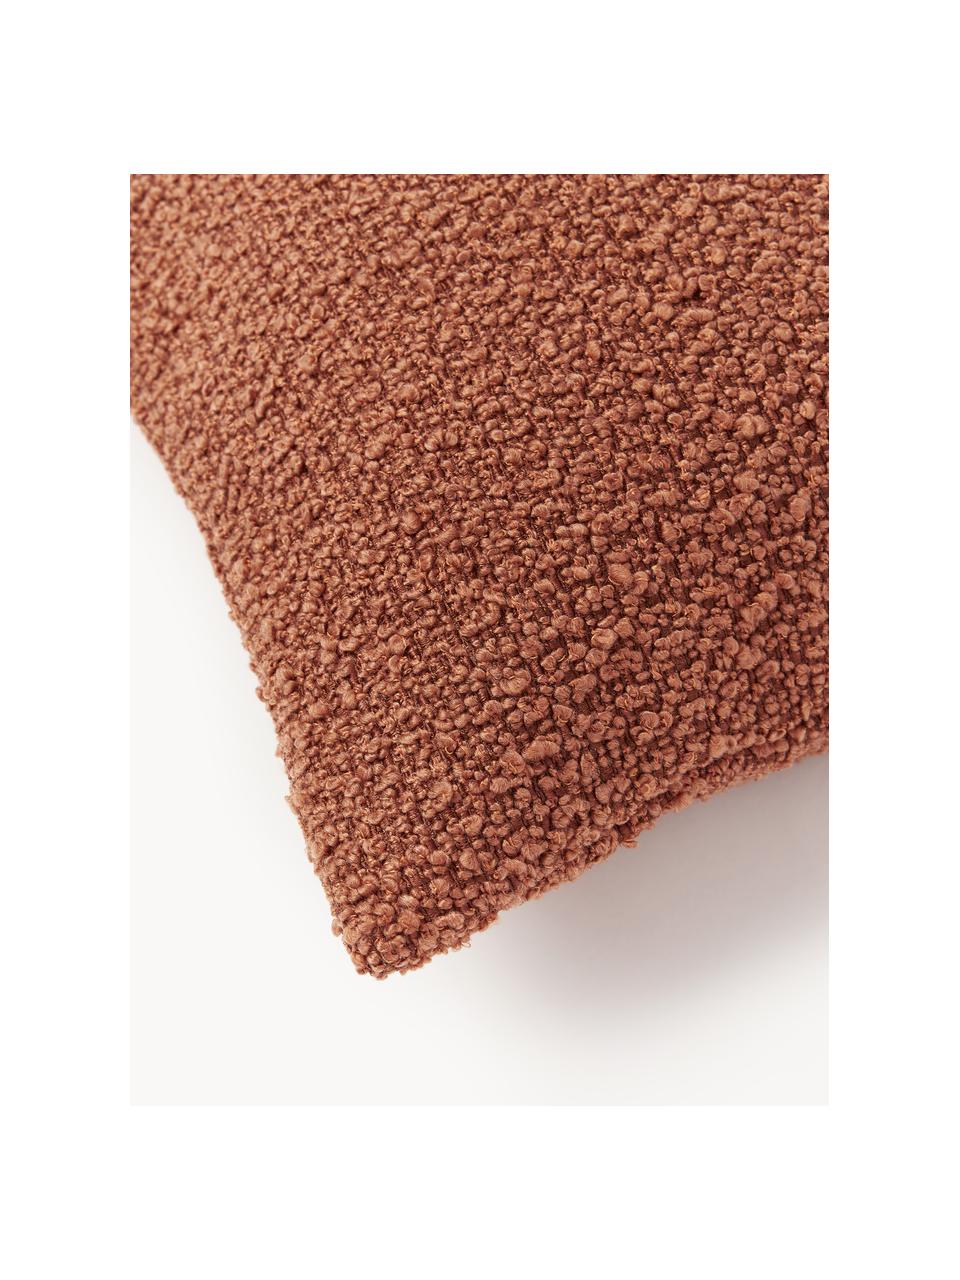 Housse de coussin en bouclette Bellamie, Tissu bouclette (95 % polyester, 5 % polyacrylique)

La bouclette est une matière qui se caractérise par sa texture aux courbes irrégulières. La surface caractéristique est créée par des boucles tissées de fils différents qui confèrent au tissu une structure unique. La structure bouclée a un effet à la fois isolant et moelleux, ce qui rend le tissu particulièrement douillet, Bouclé terracotta, larg. 45 x long. 45 cm, 2 pièces